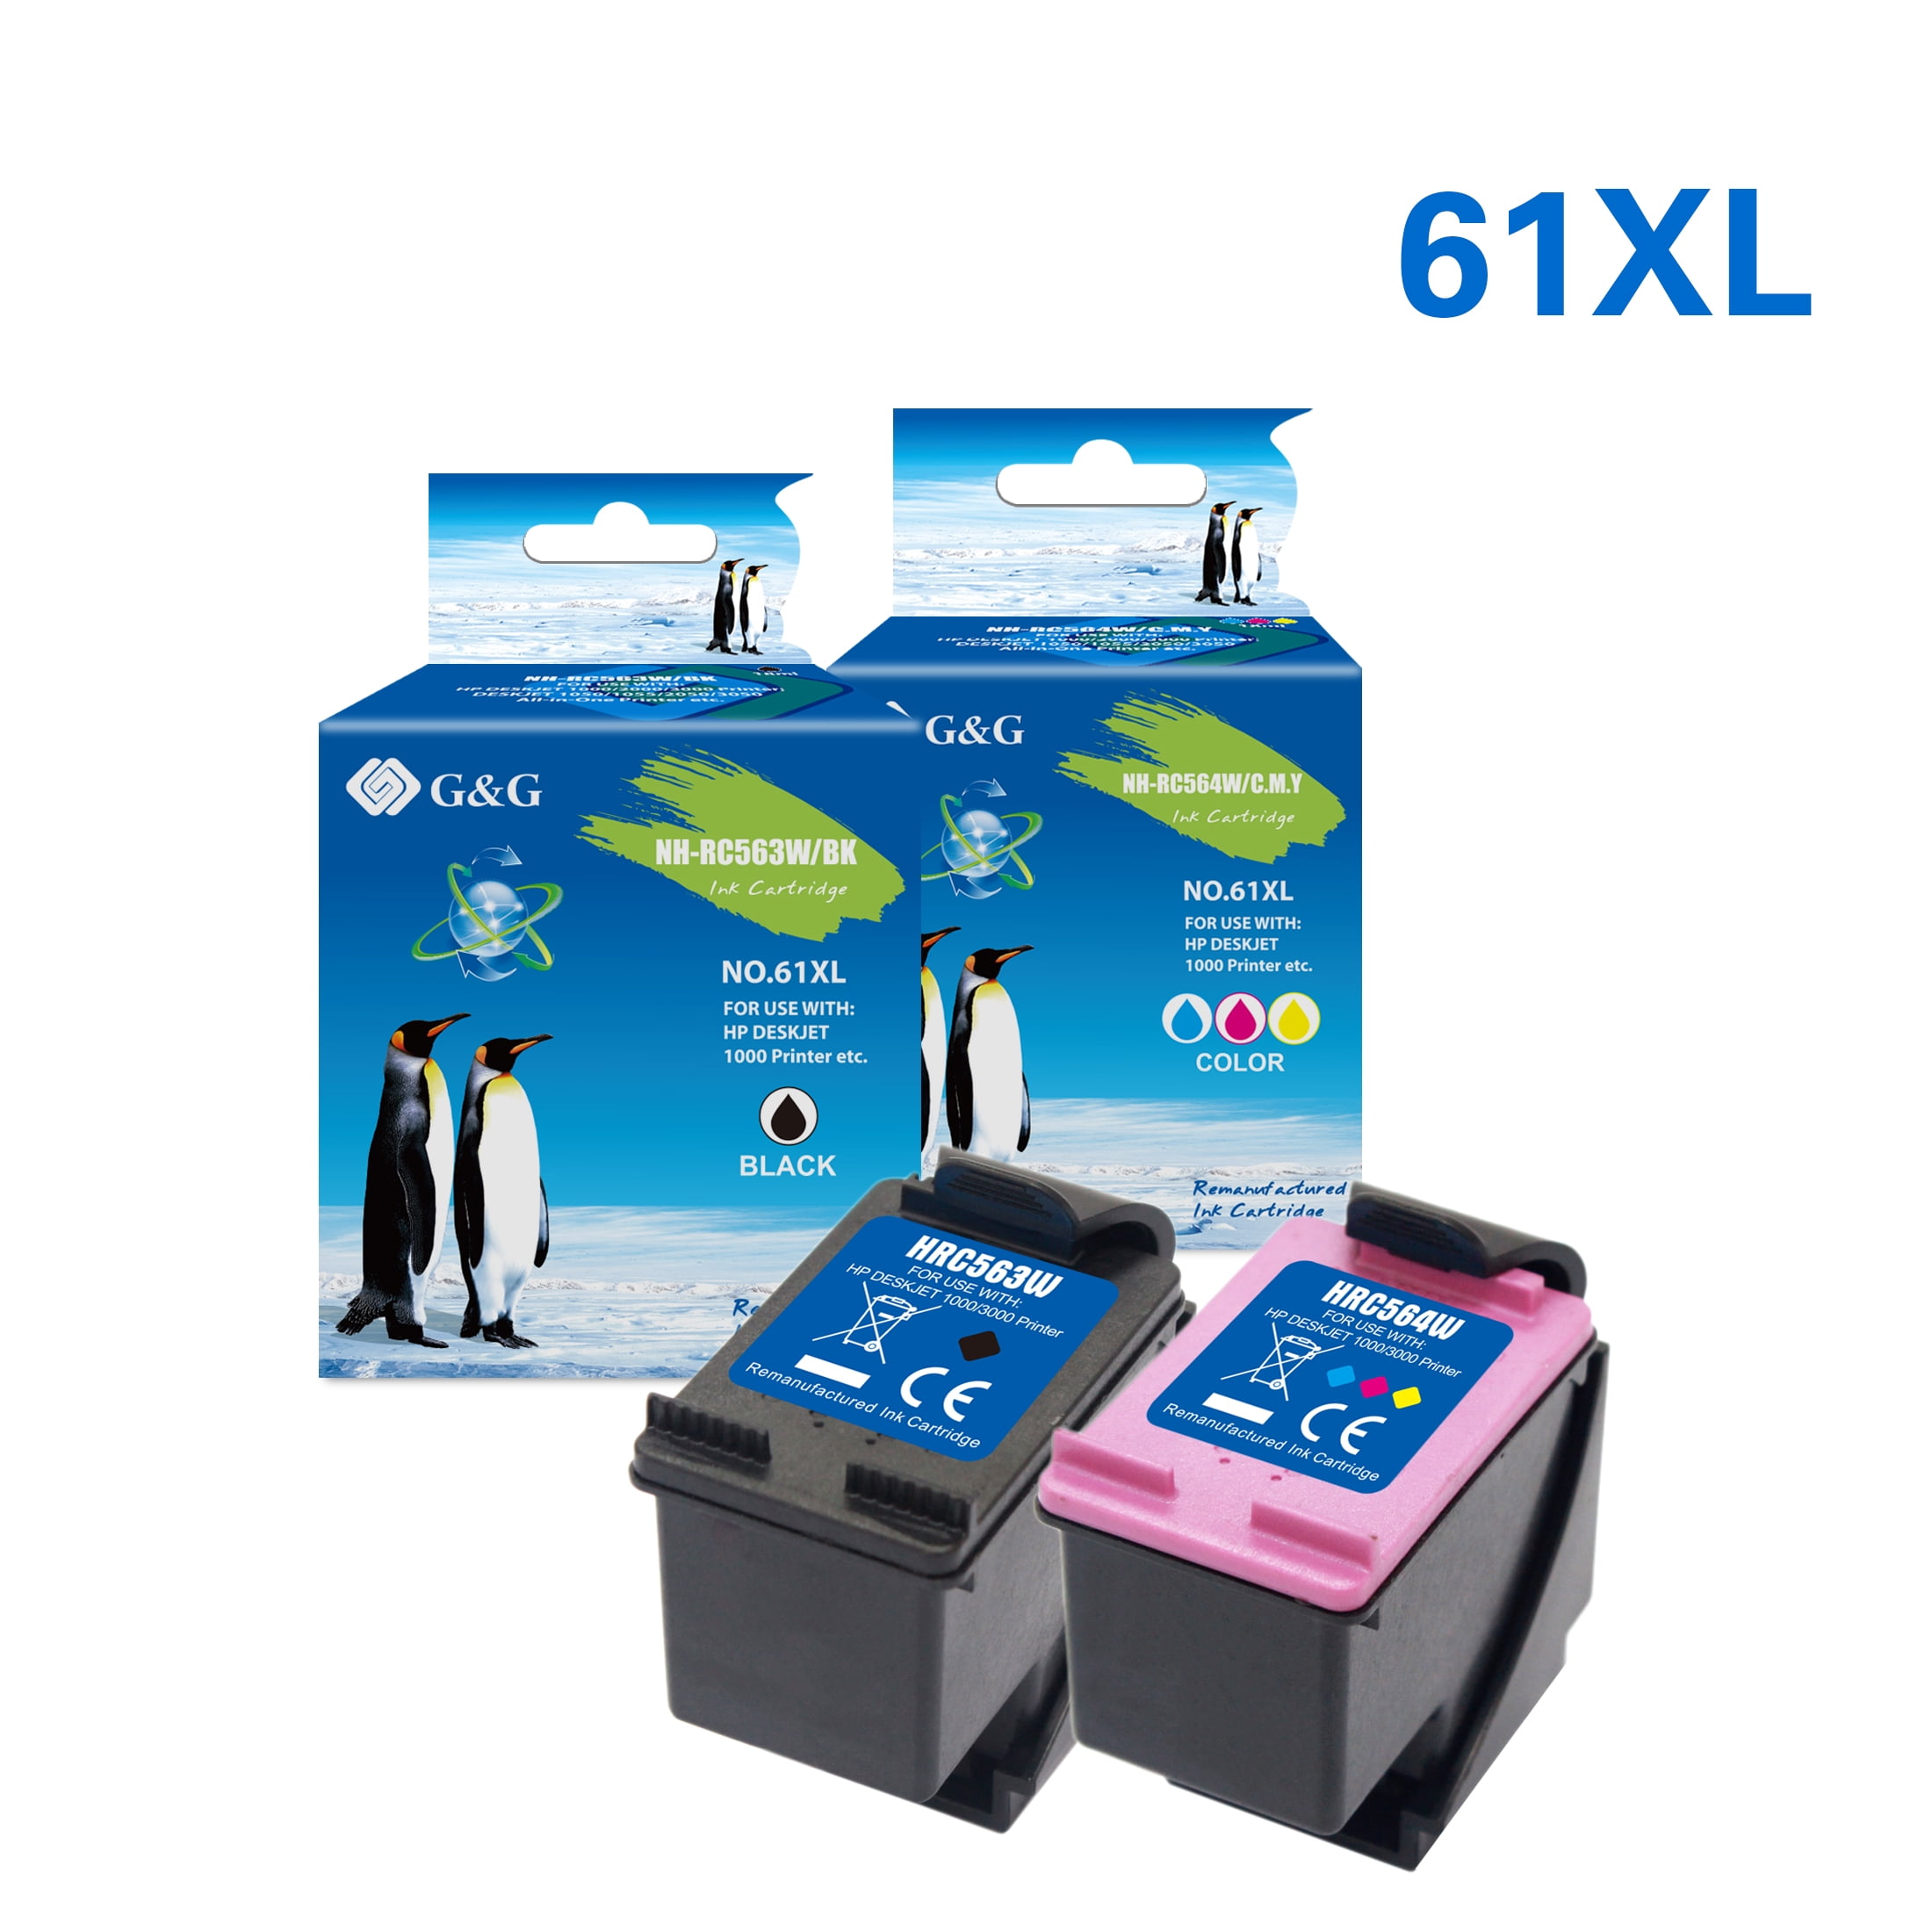 G&G 61XL Ink Cartridge for 4500 5530 5539 4636 4630 2620 Deskjet 2544 2622 3512 (1 Black, Tri-Color) - Walmart.com